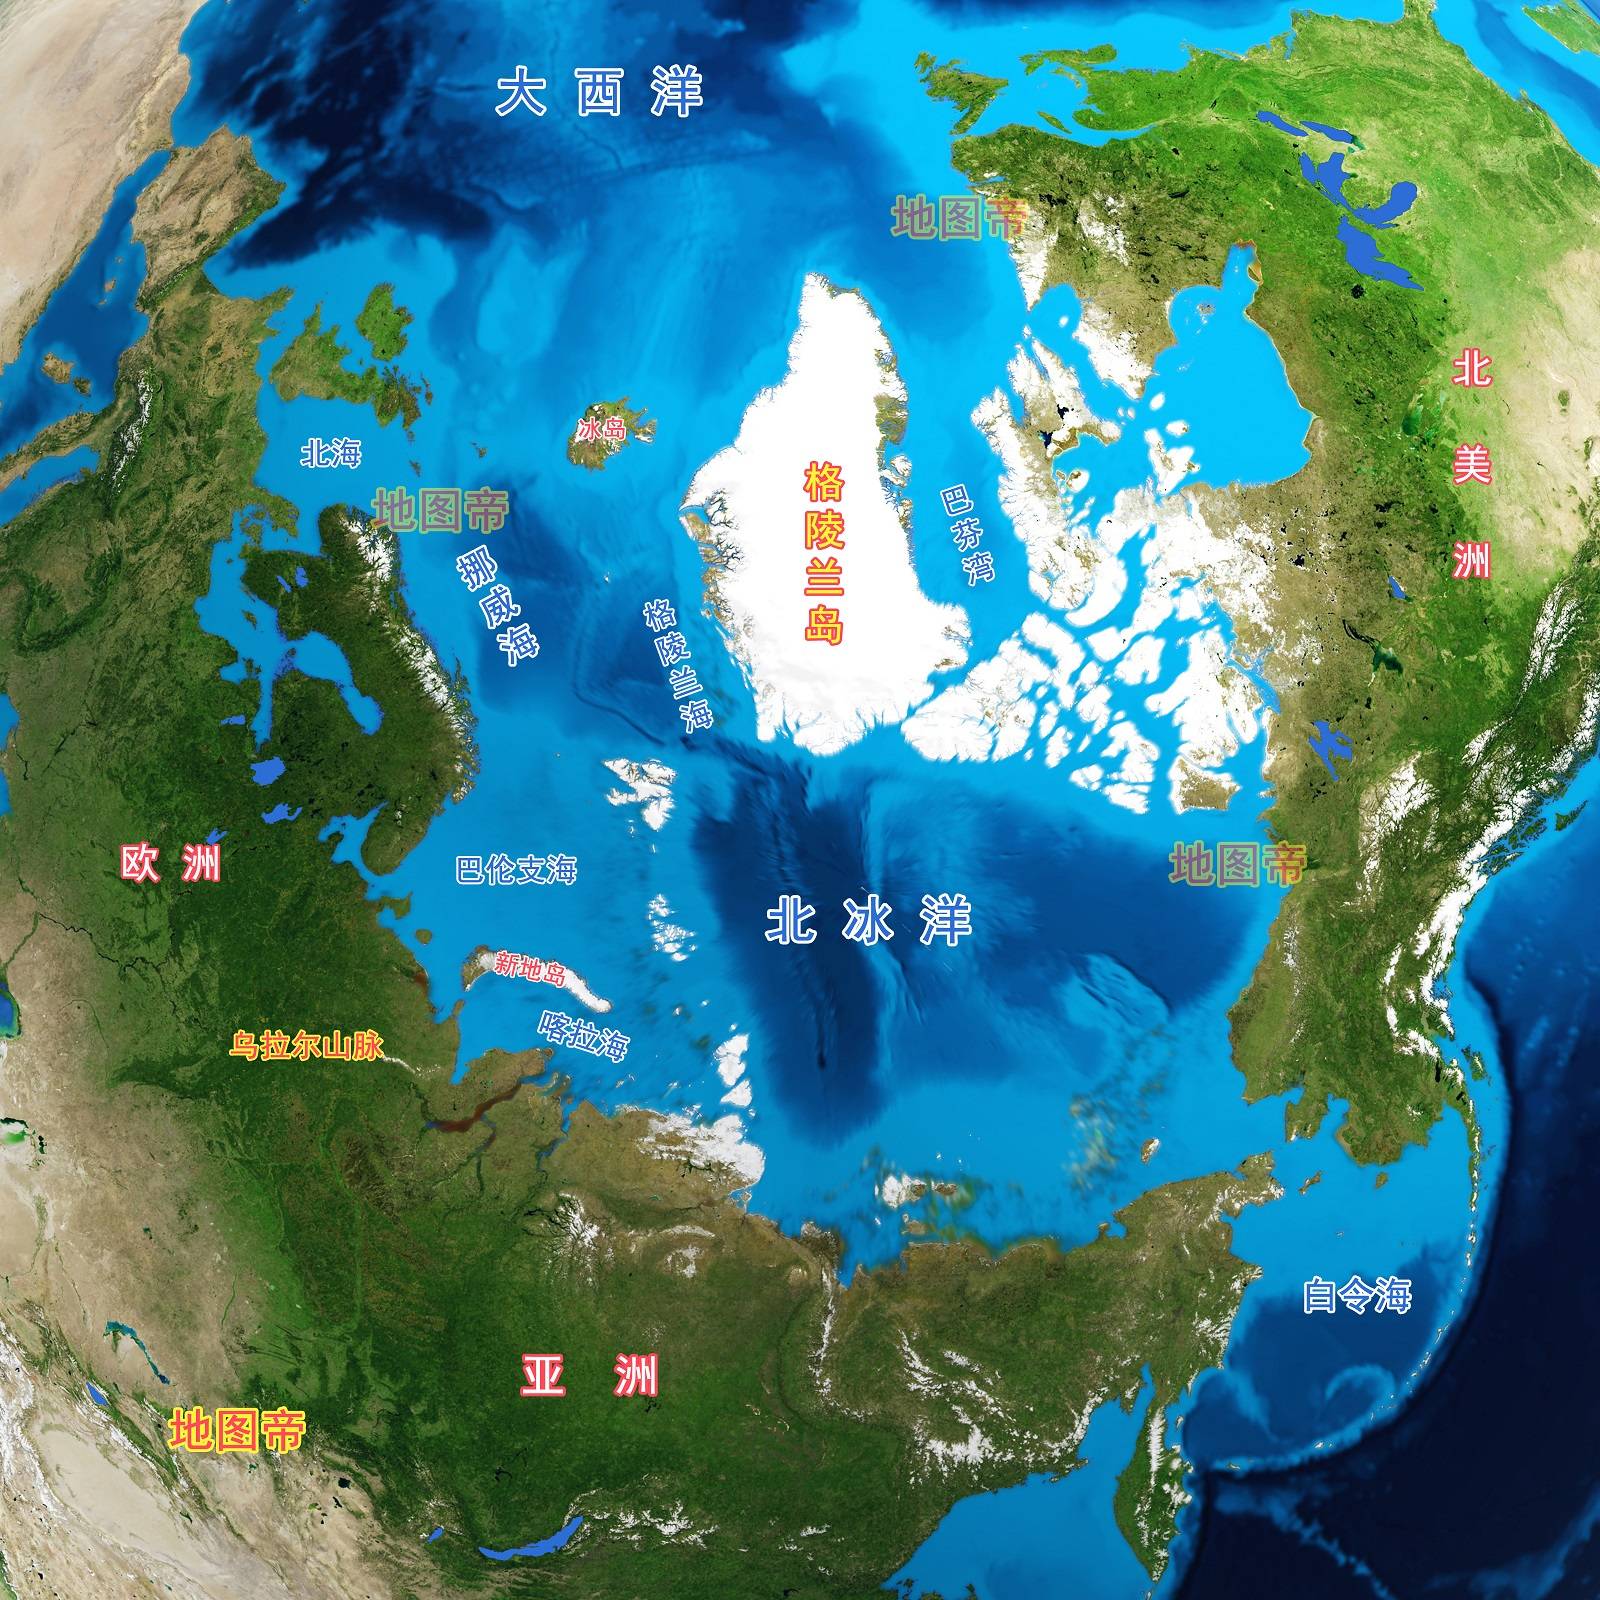 亚洲与欧洲的分界线,是何时东扩到乌拉尔山脉的?图片